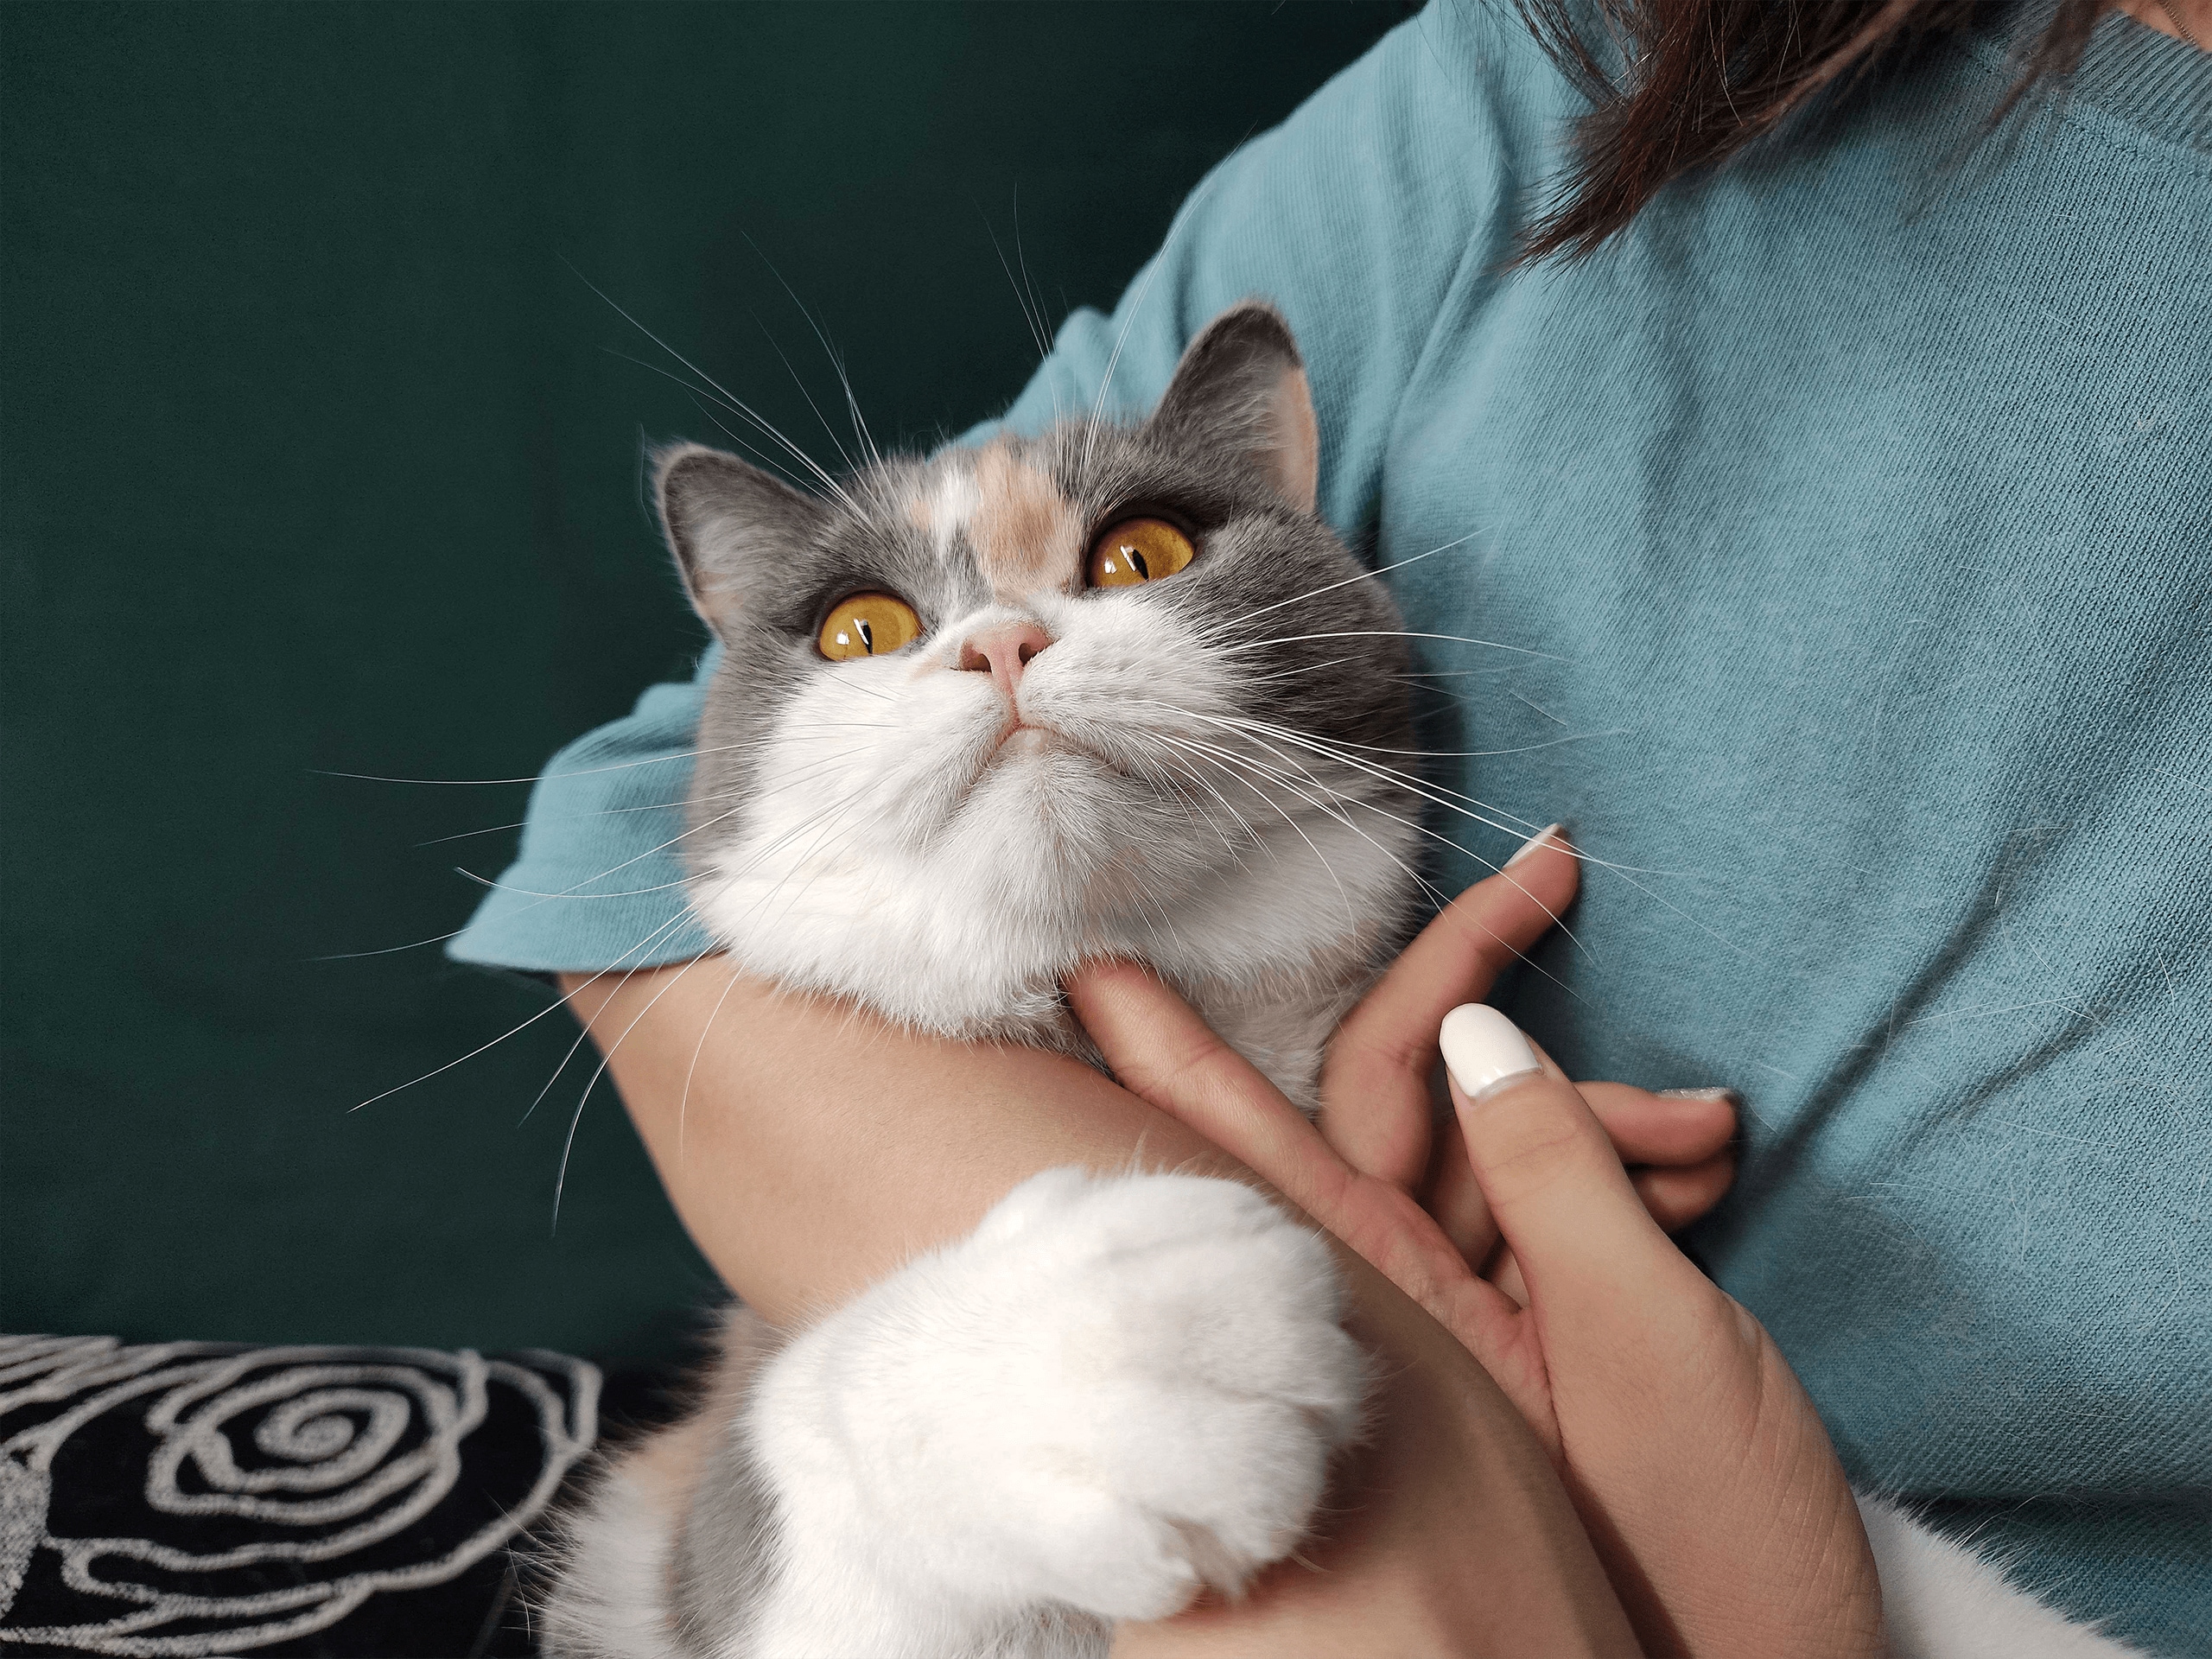 这是参与三星ISOCELL照片展的ISOCELL以2亿像素表现的女人怀里的猫的照片。